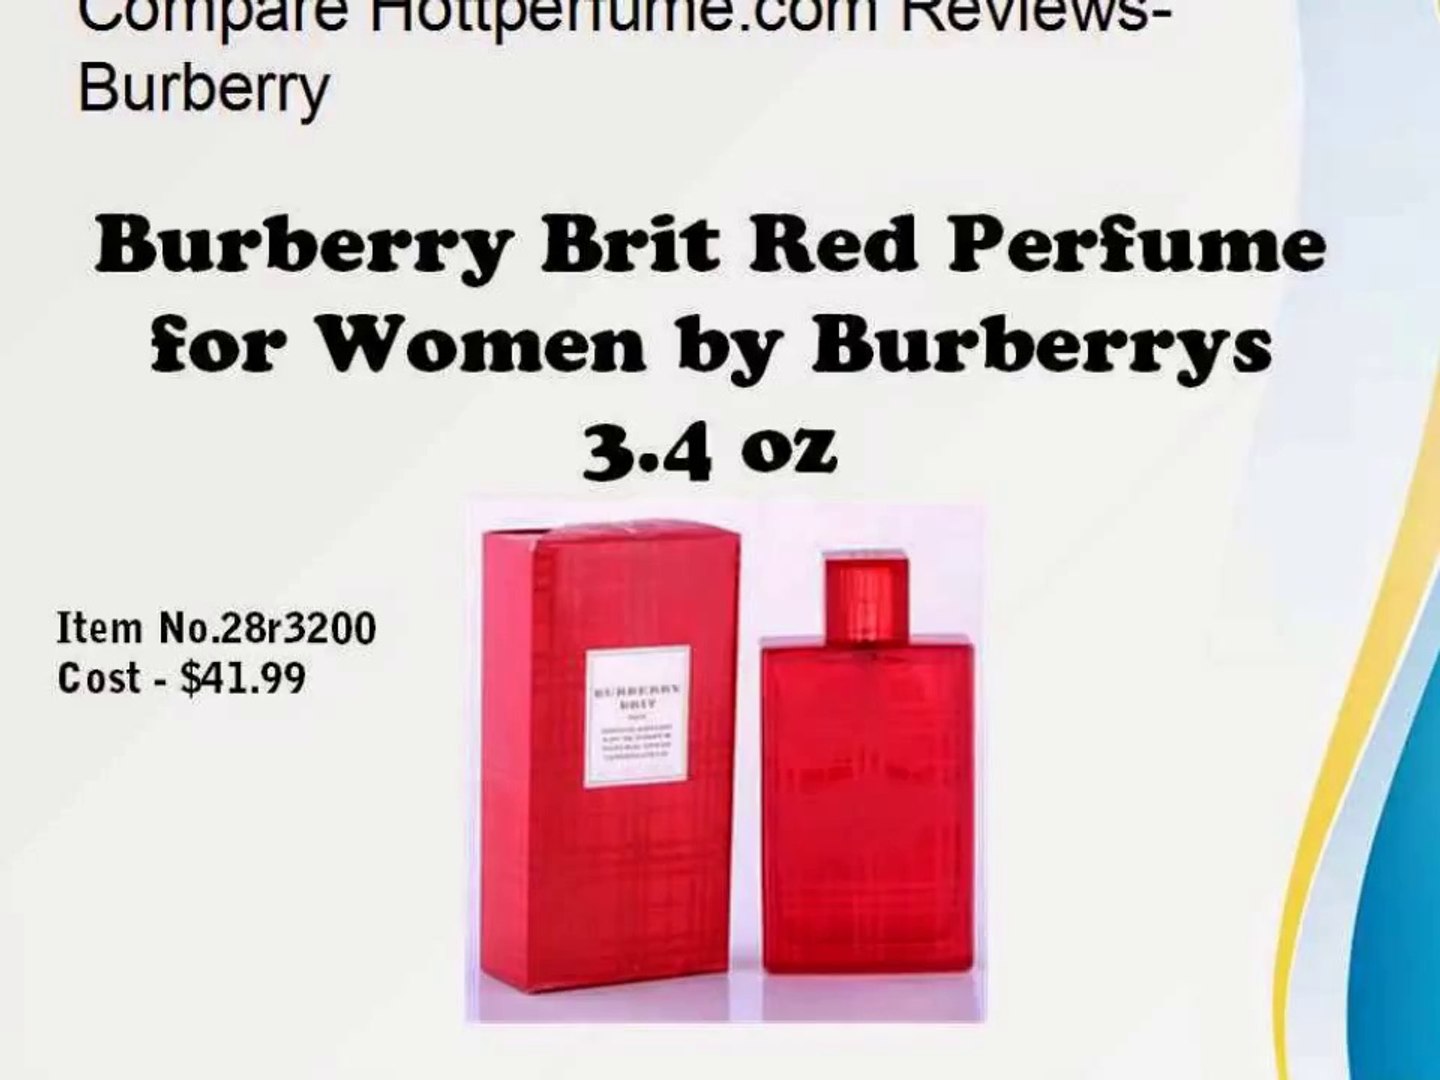 Compare Hottperfume.com Reviews- Burberry